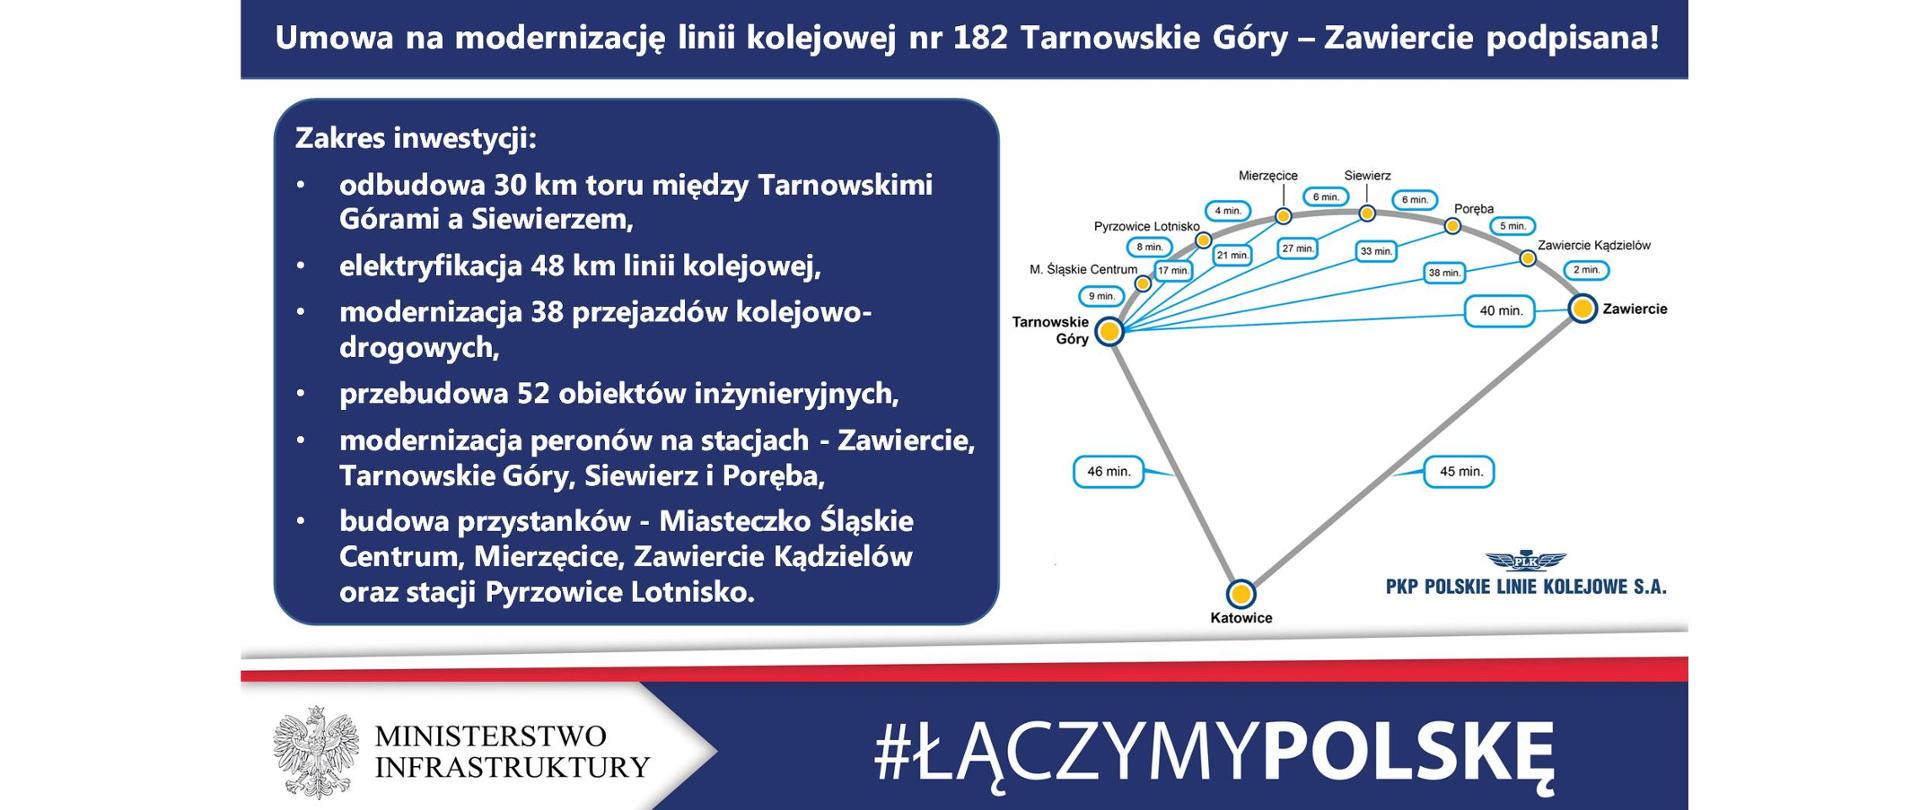 PKP Polskie Linie Kolejowe SA podpisały umowę o wartości ponad 660 mln zł na inwestycję, która umożliwi dojazd koleją do lotniska w Pyrzowicach z Katowic, Tarnowskich Gór lub z Zawiercia